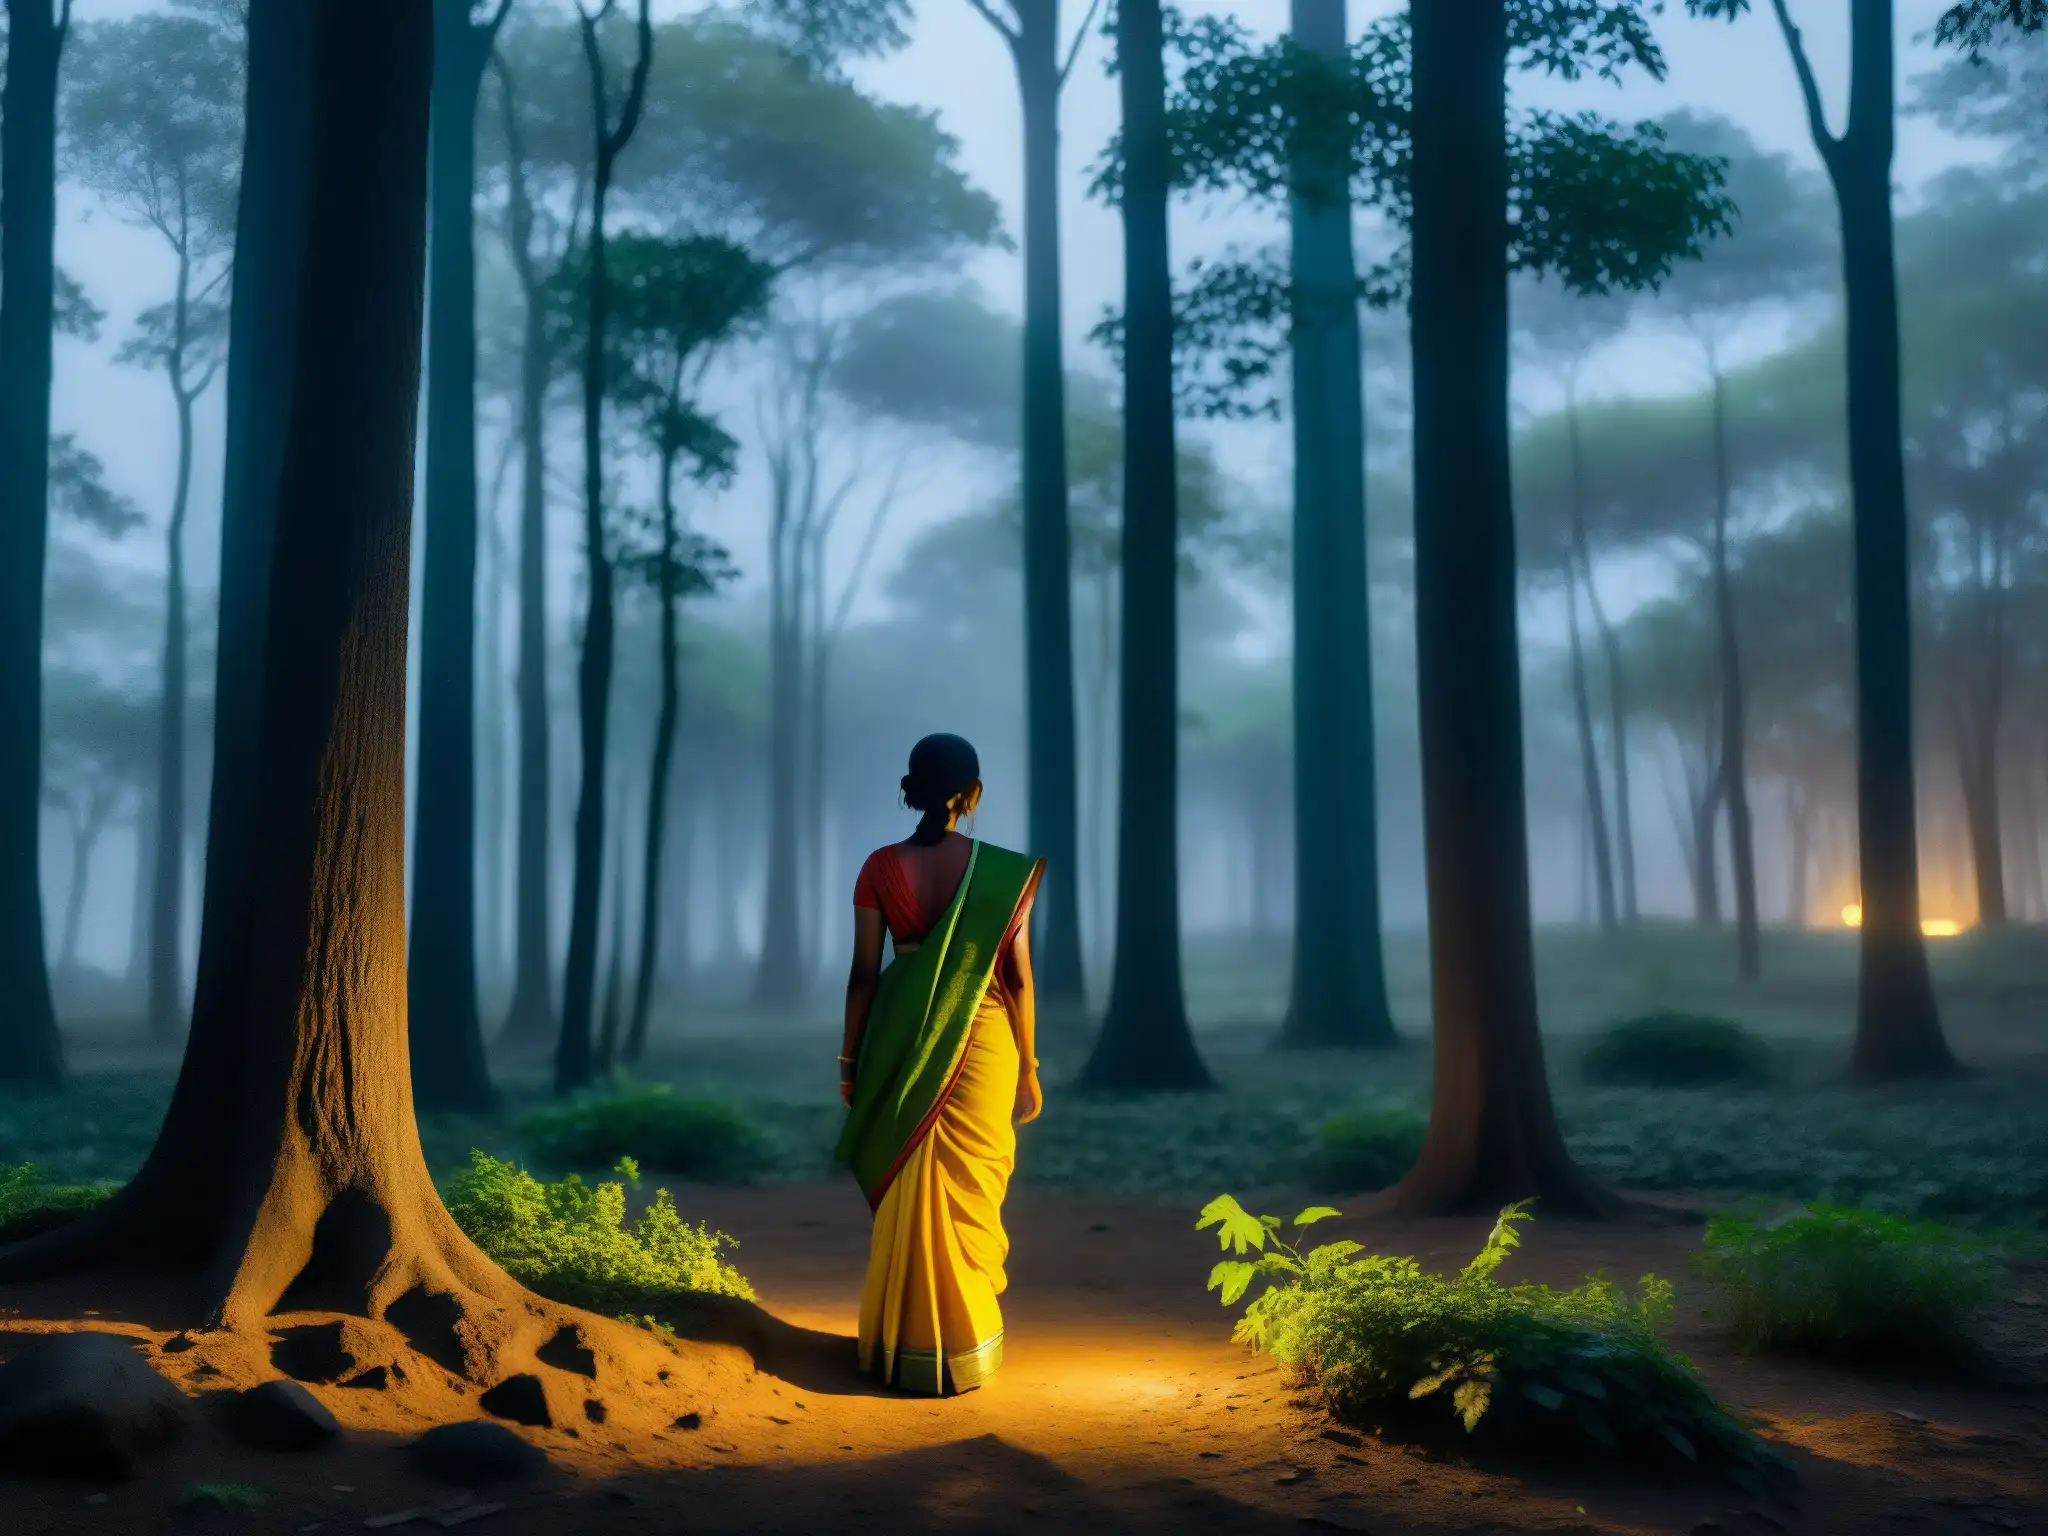 Espíritu acechador en Sanjay Van: misteriosa noche en el denso bosque, con la luz de la luna filtrándose entre el dosel y la silueta de la Dama Blanca